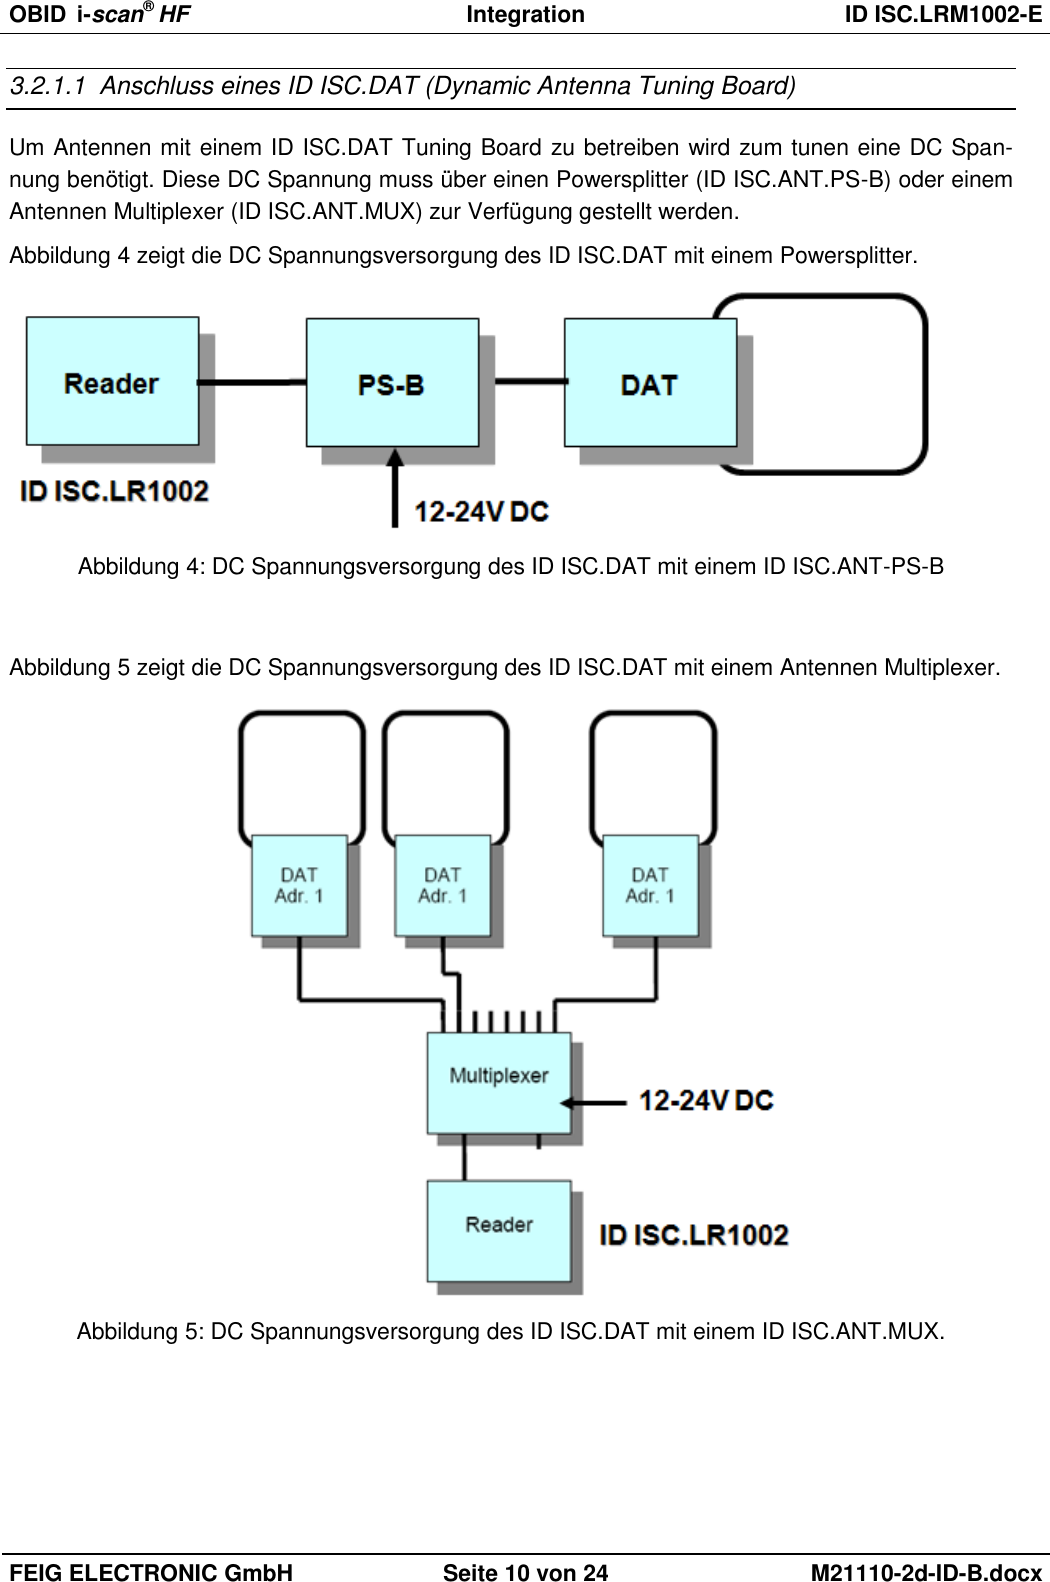 OBID  i-scan® HF Integration  ID ISC.LRM1002-E  FEIG ELECTRONIC GmbH Seite 10 von 24 M21110-2d-ID-B.docx  3.2.1.1  Anschluss eines ID ISC.DAT (Dynamic Antenna Tuning Board) Um Antennen mit einem ID ISC.DAT Tuning Board zu betreiben wird zum tunen eine DC Span-nung benötigt. Diese DC Spannung muss über einen Powersplitter (ID ISC.ANT.PS-B) oder einem Antennen Multiplexer (ID ISC.ANT.MUX) zur Verfügung gestellt werden. Abbildung 4 zeigt die DC Spannungsversorgung des ID ISC.DAT mit einem Powersplitter.  Abbildung 4: DC Spannungsversorgung des ID ISC.DAT mit einem ID ISC.ANT-PS-B  Abbildung 5 zeigt die DC Spannungsversorgung des ID ISC.DAT mit einem Antennen Multiplexer.  Abbildung 5: DC Spannungsversorgung des ID ISC.DAT mit einem ID ISC.ANT.MUX.  